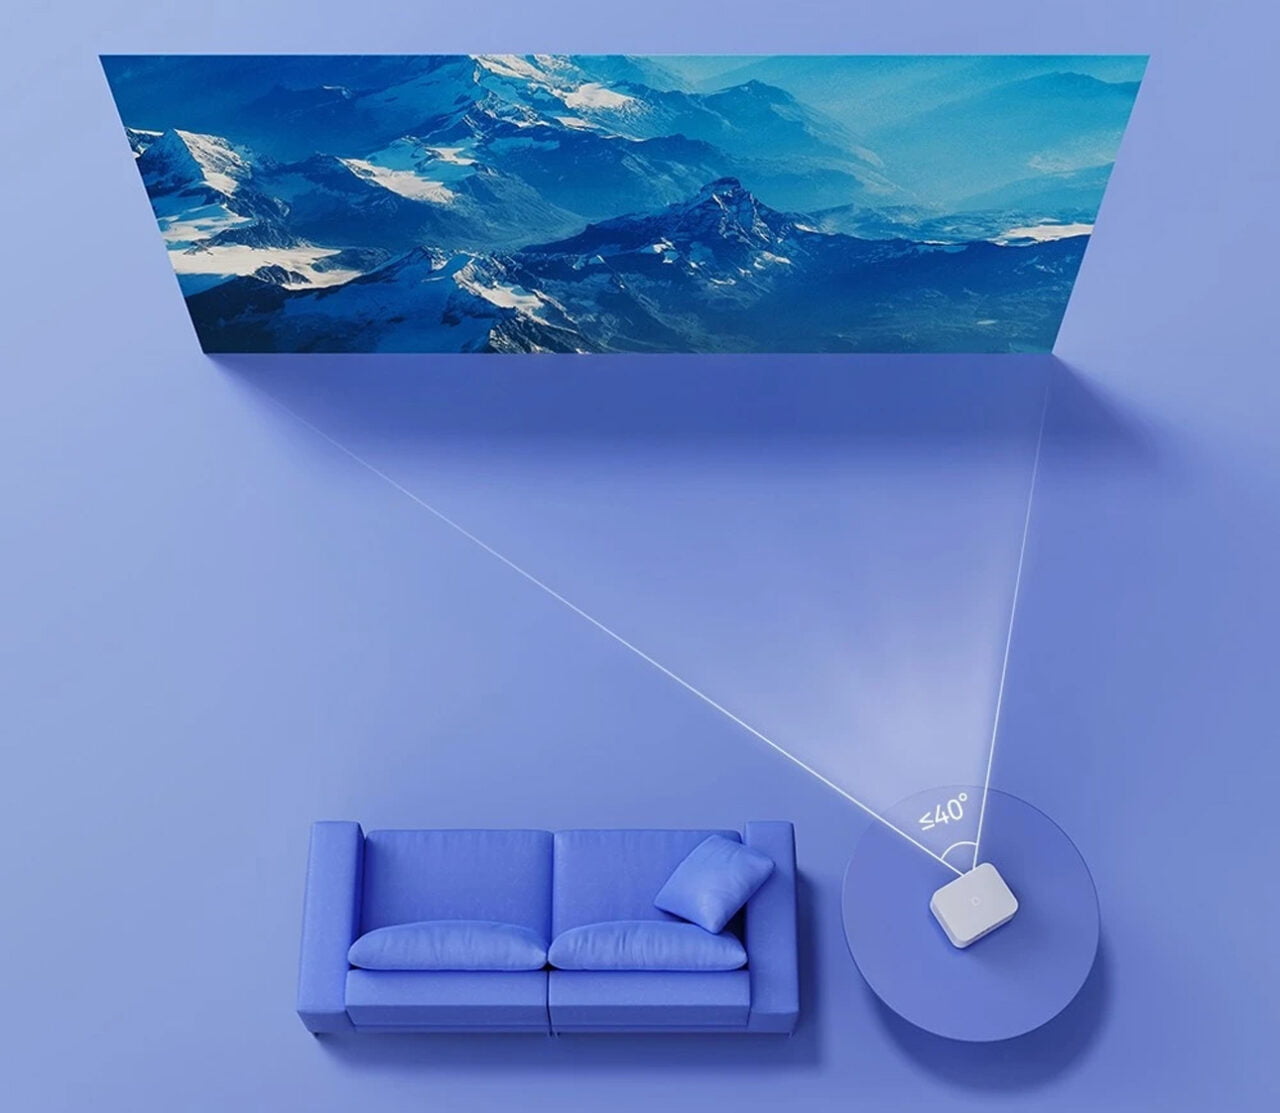 Obraz przedstawia projektor przyścienny wyświetlający obraz gór na ścianie w pomieszczeniu z niebieską kanapą, który tworzy wrażenie niezwykłej głębi przestrzeni.